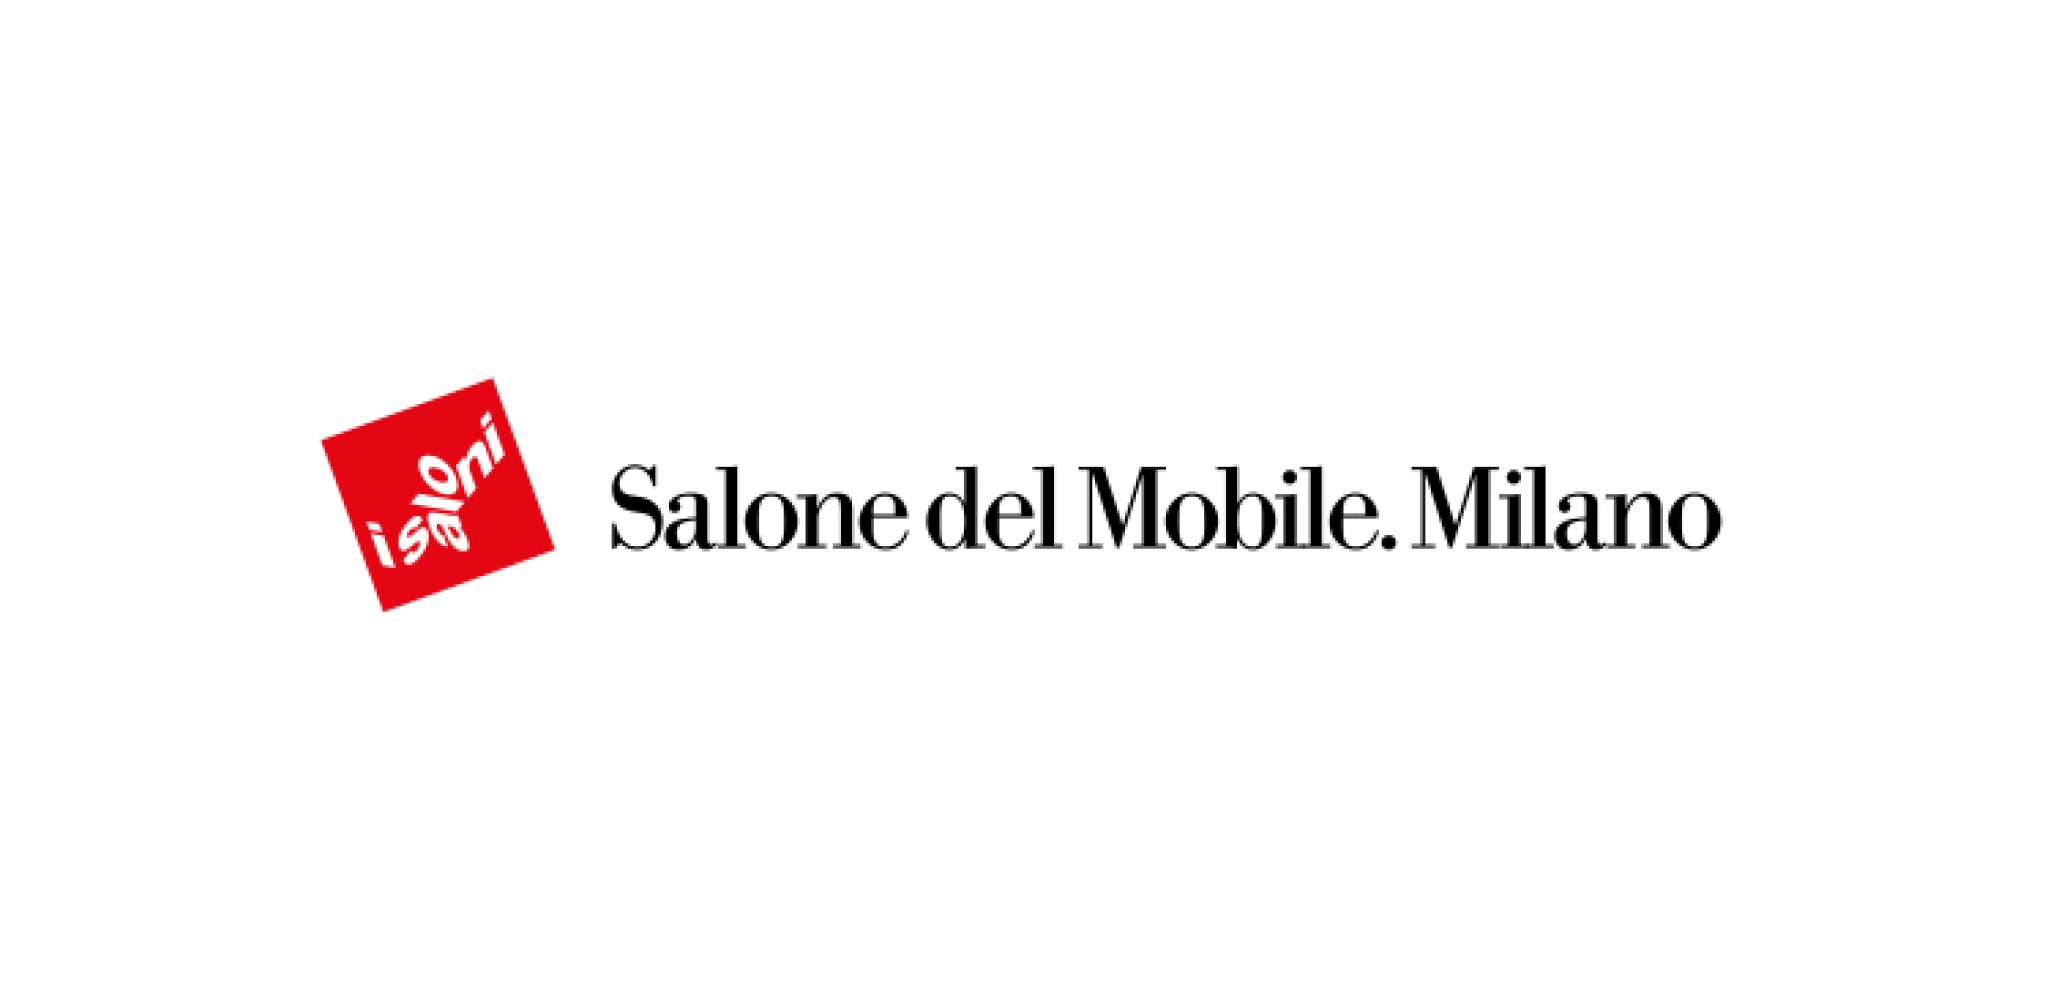 Varias empresas del FMRE participan en el Salone del Mobile de Milán